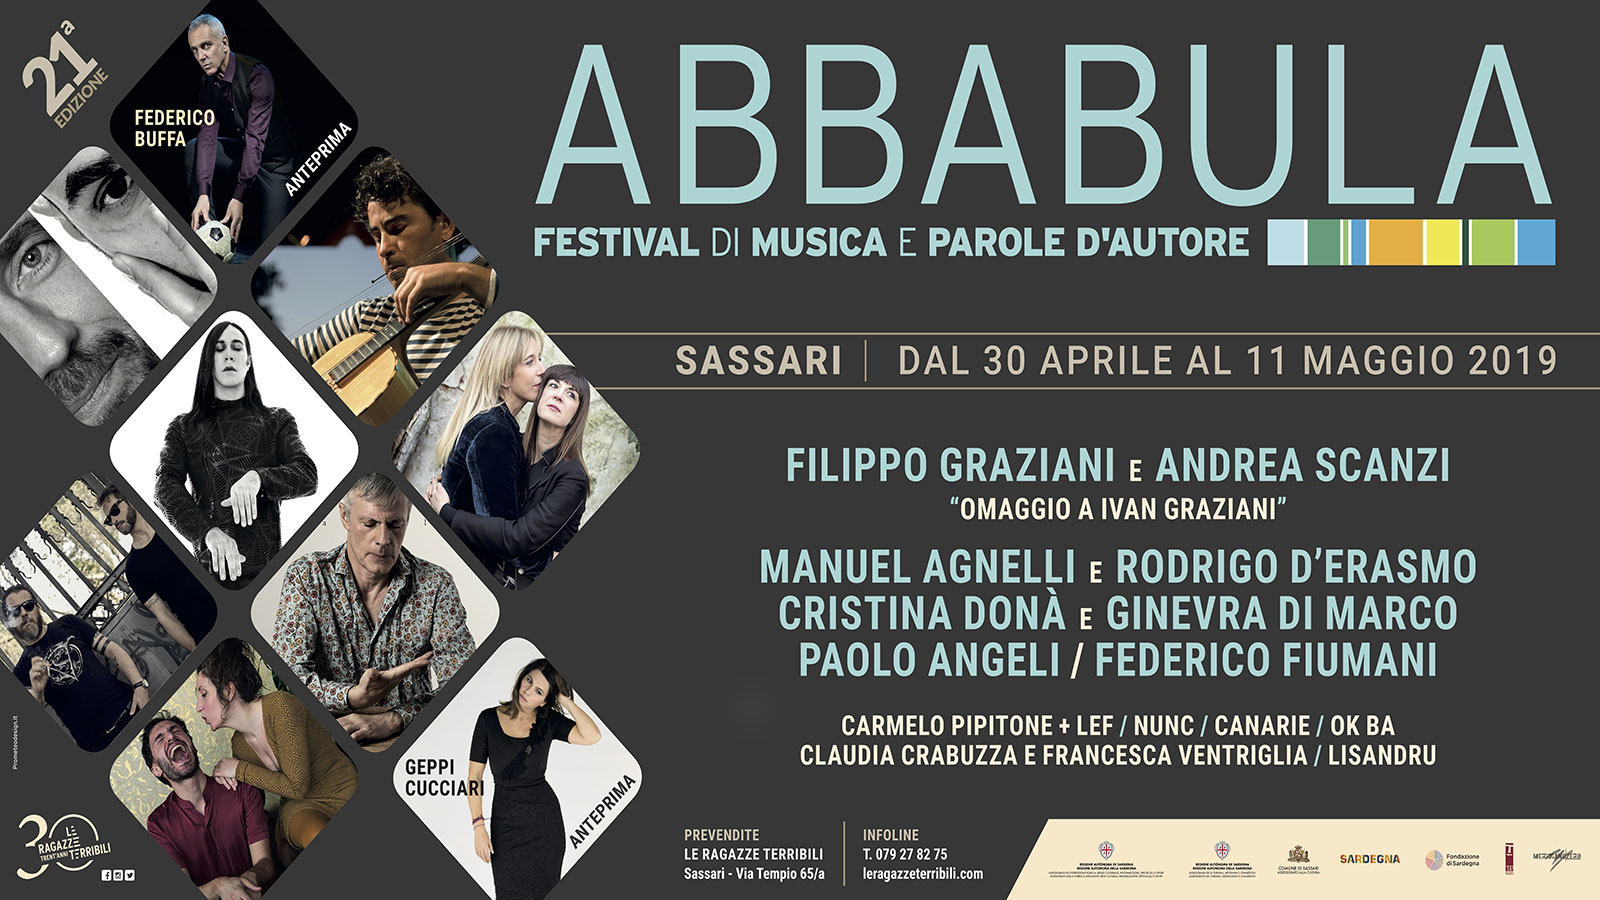 La locandina del festival Abbabula, che si terrà a Sassari dal 30 aprile all'11 maggio.